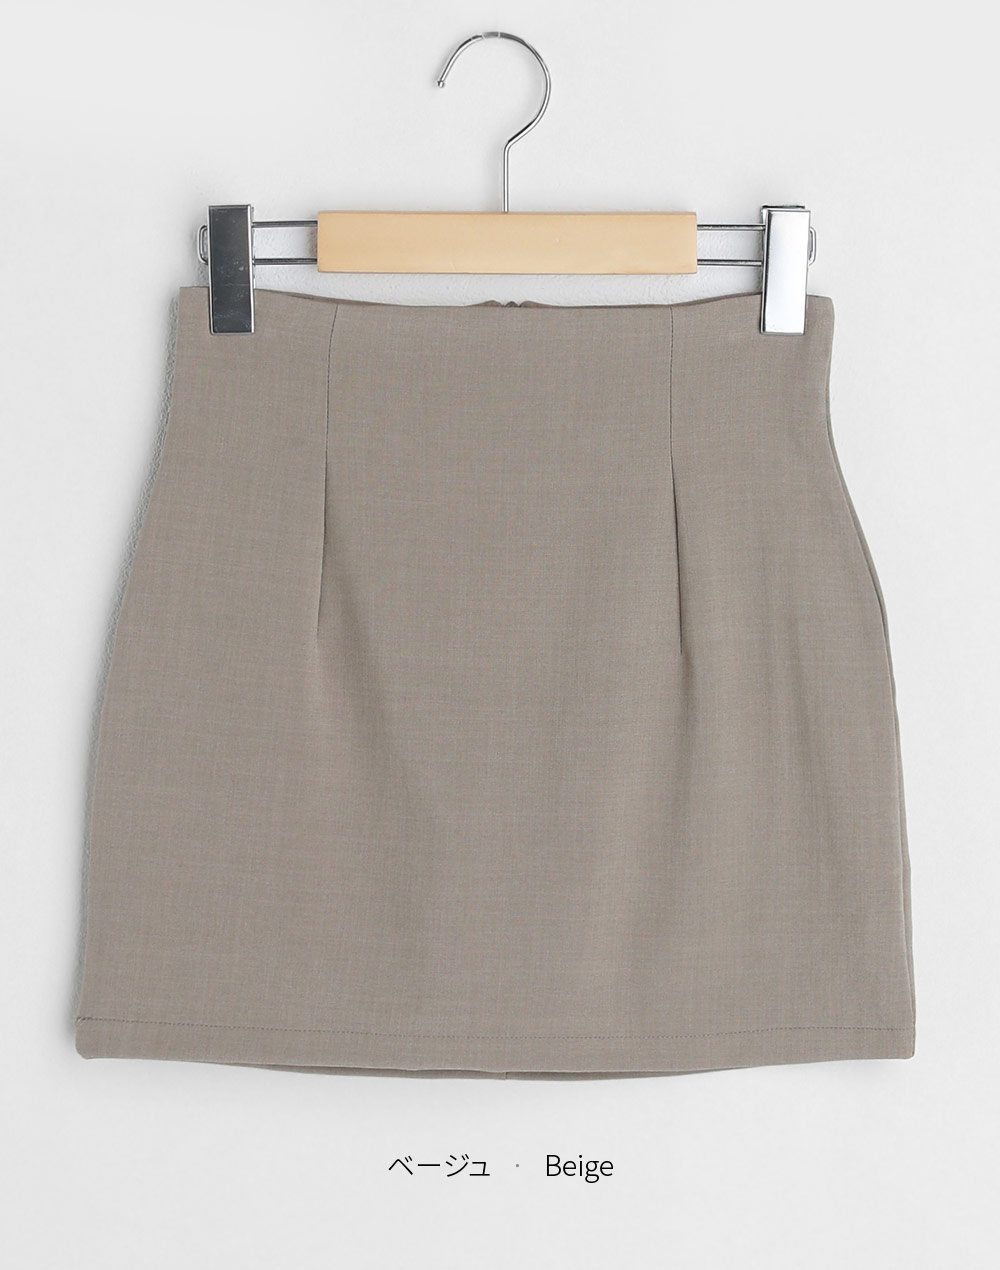 ハイウエストミニタイトスカート・t281684（スカート/スカート）| cho____07 | 東京ガールズマーケット